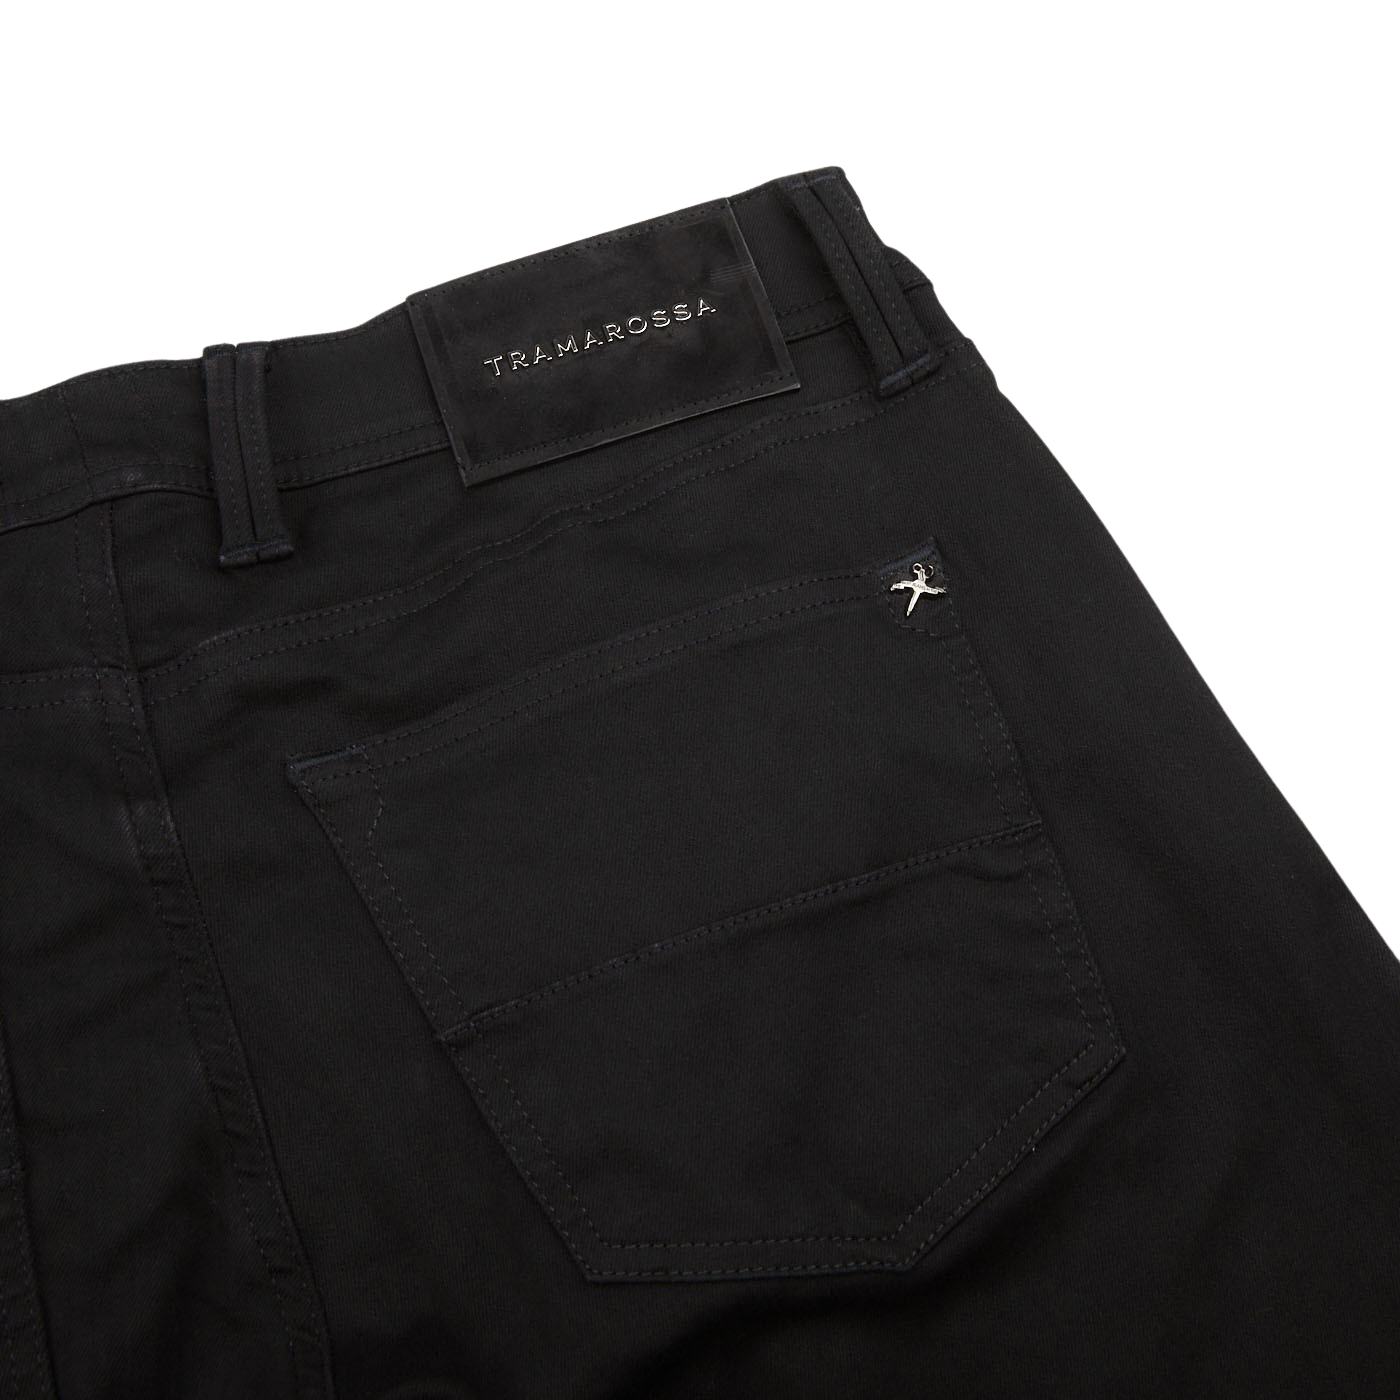 Tramarossa Black Super Stretch Michelangelo Jeans Pocket